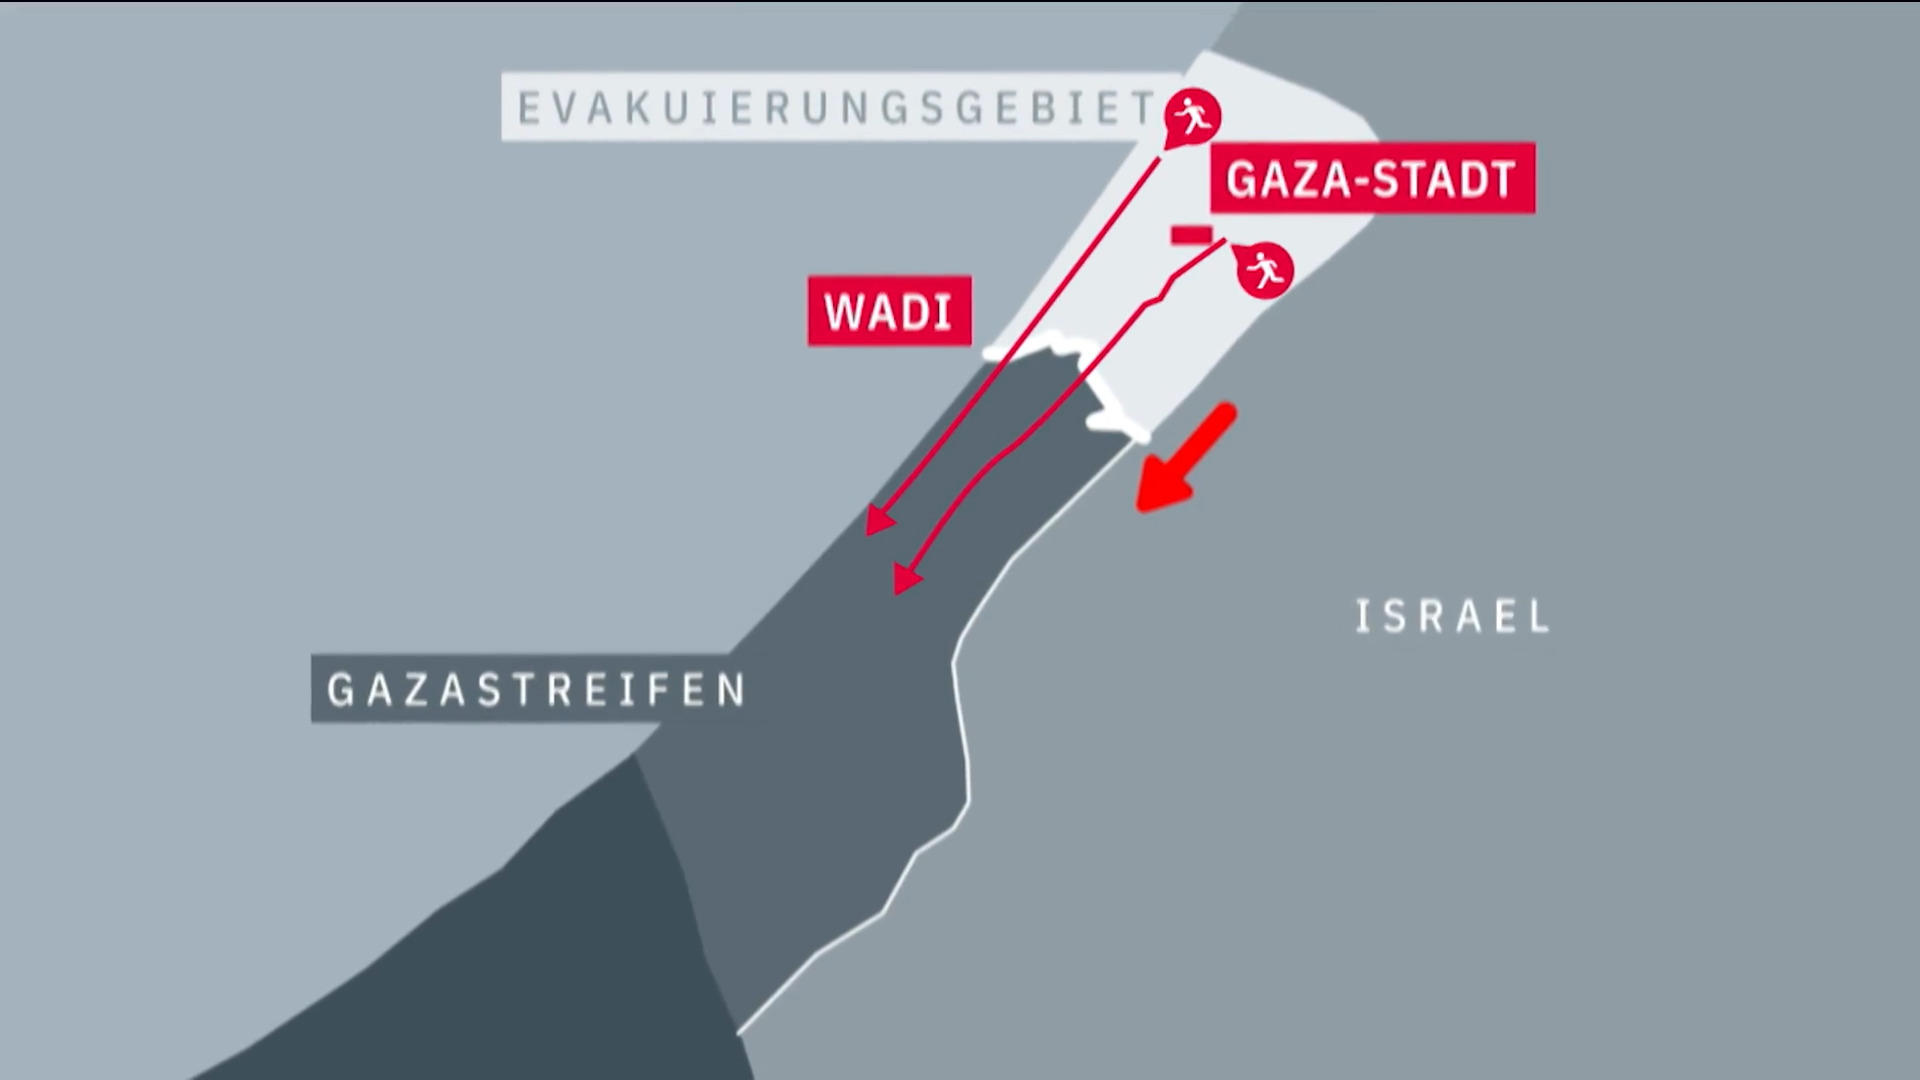 Gli abitanti di Gaza dovrebbero lasciare il nord di Gaza poco prima dell’attacco di terra israeliano